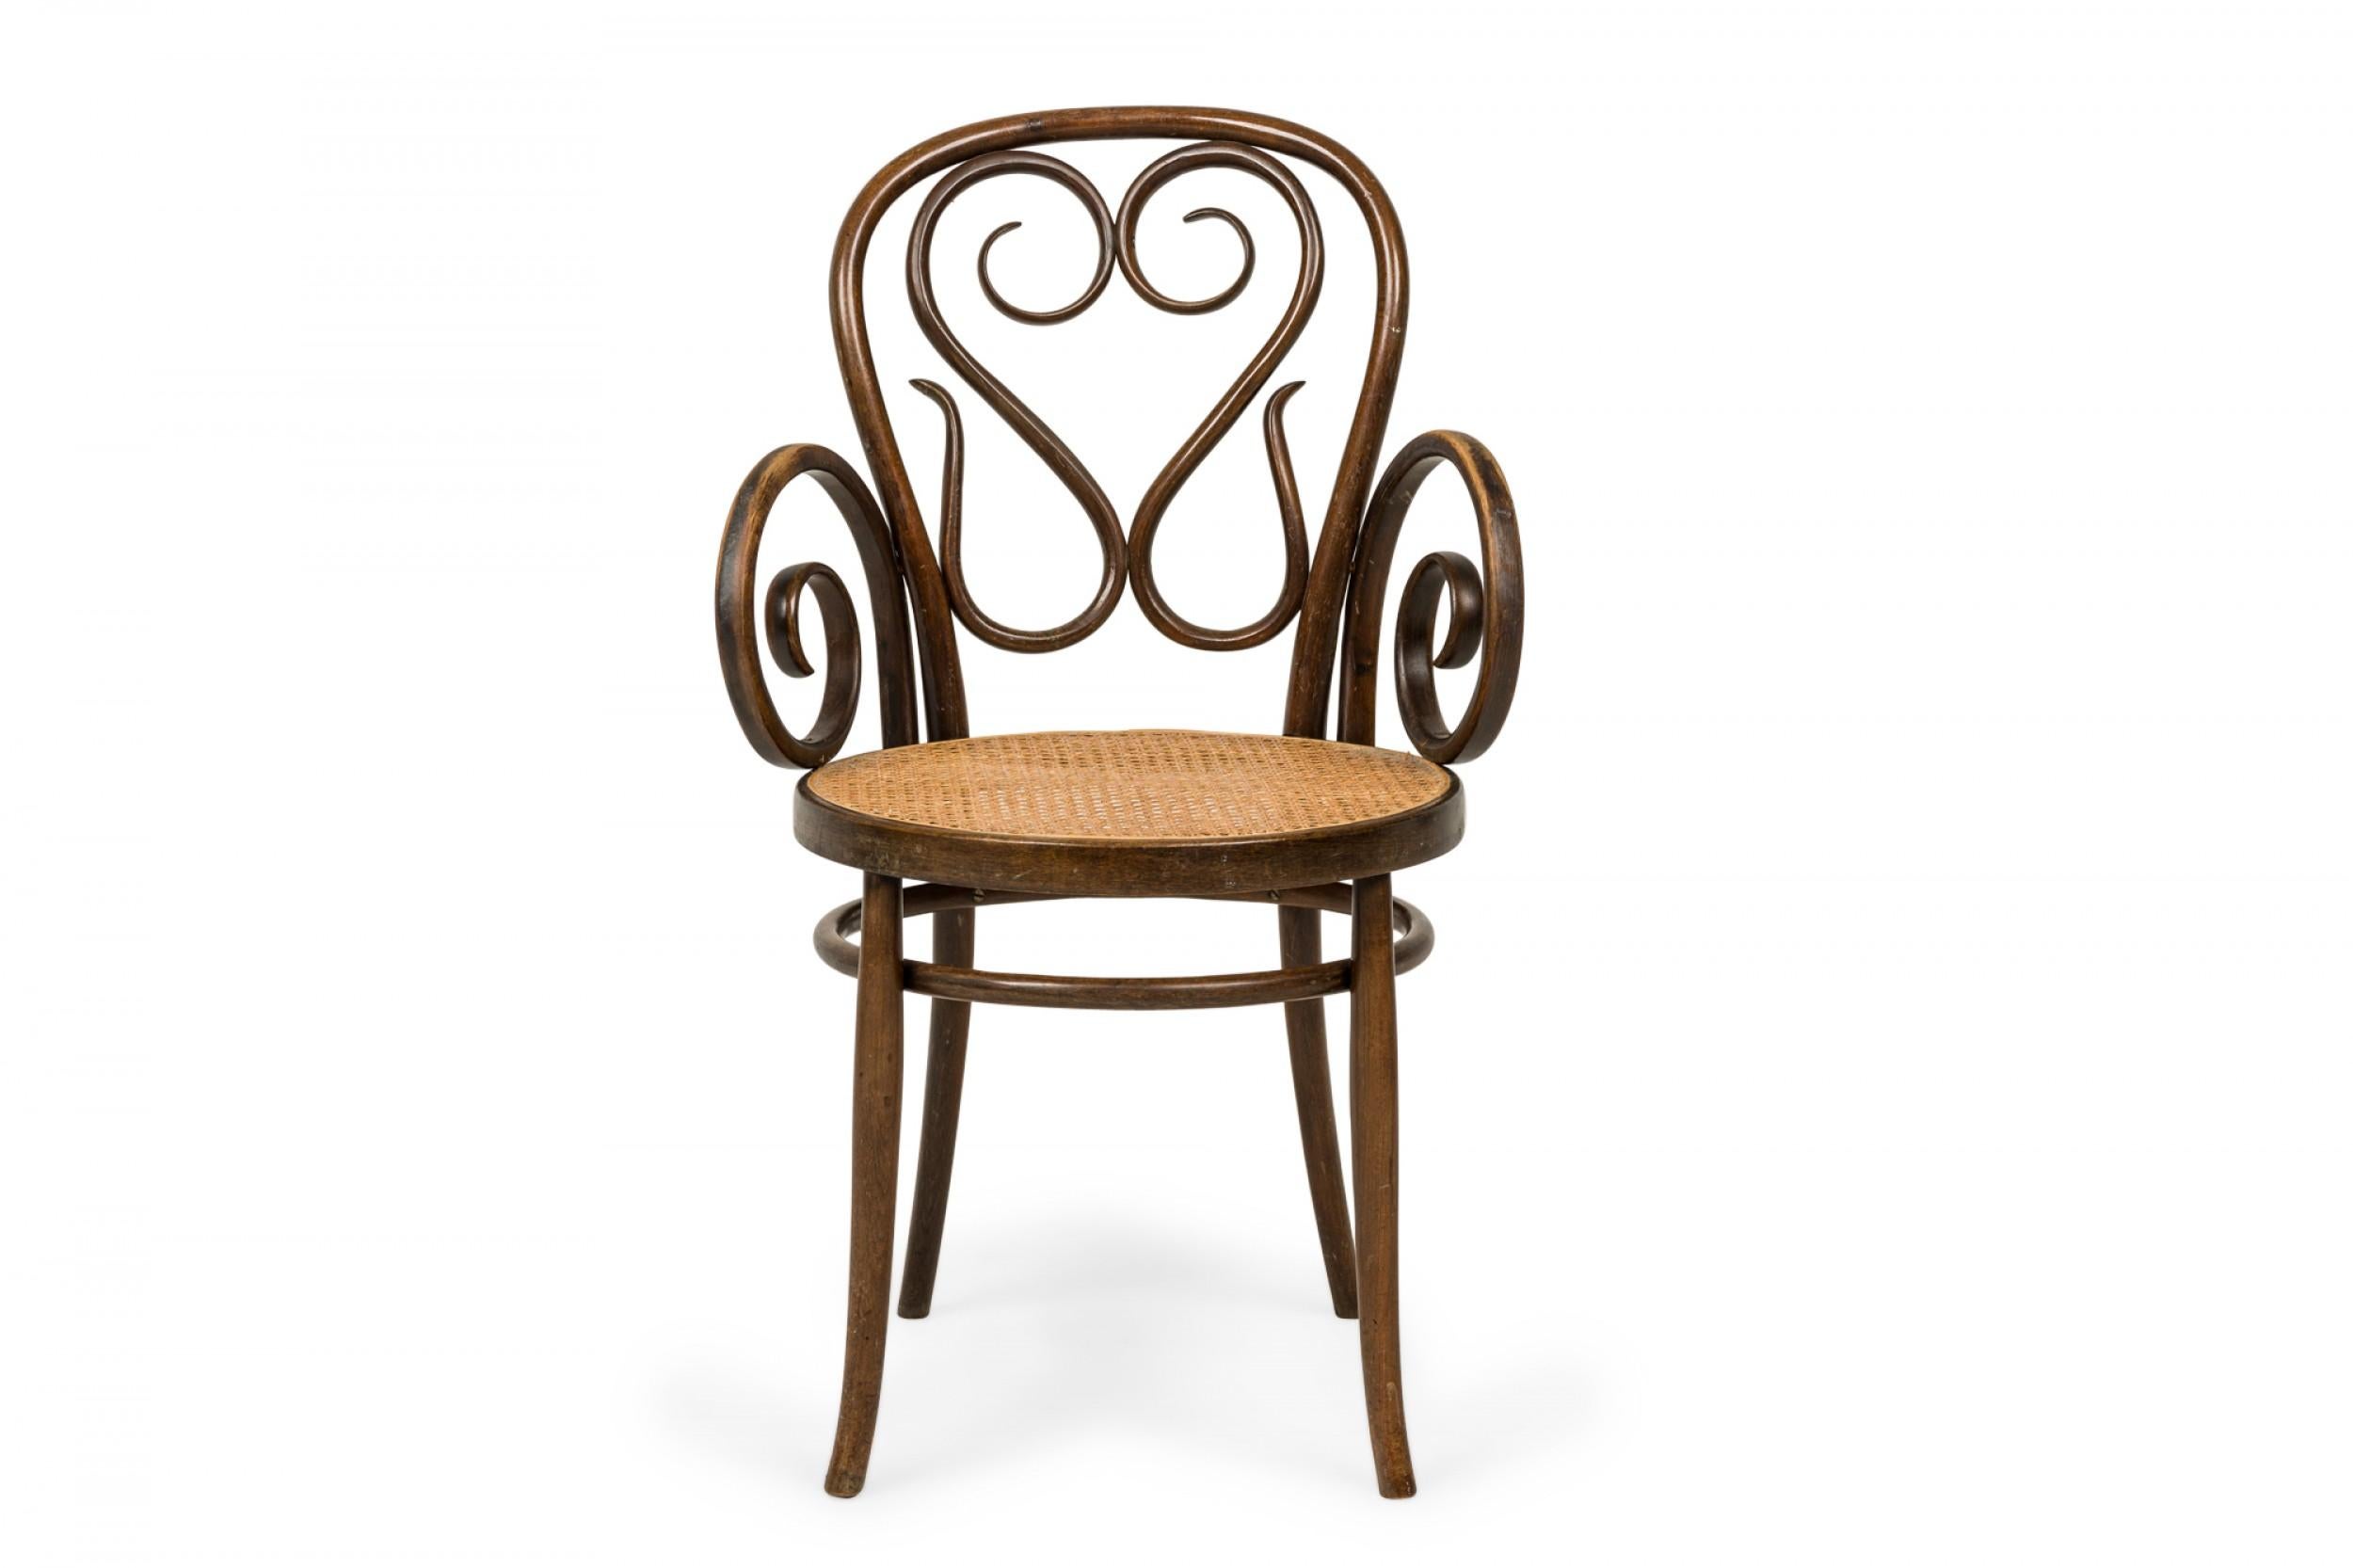 PAIRE de fauteuils italiens en bois courbé du milieu du siècle avec dossiers et accoudoirs en forme de volutes et sièges à cannage circulaire. (Prix par paire).